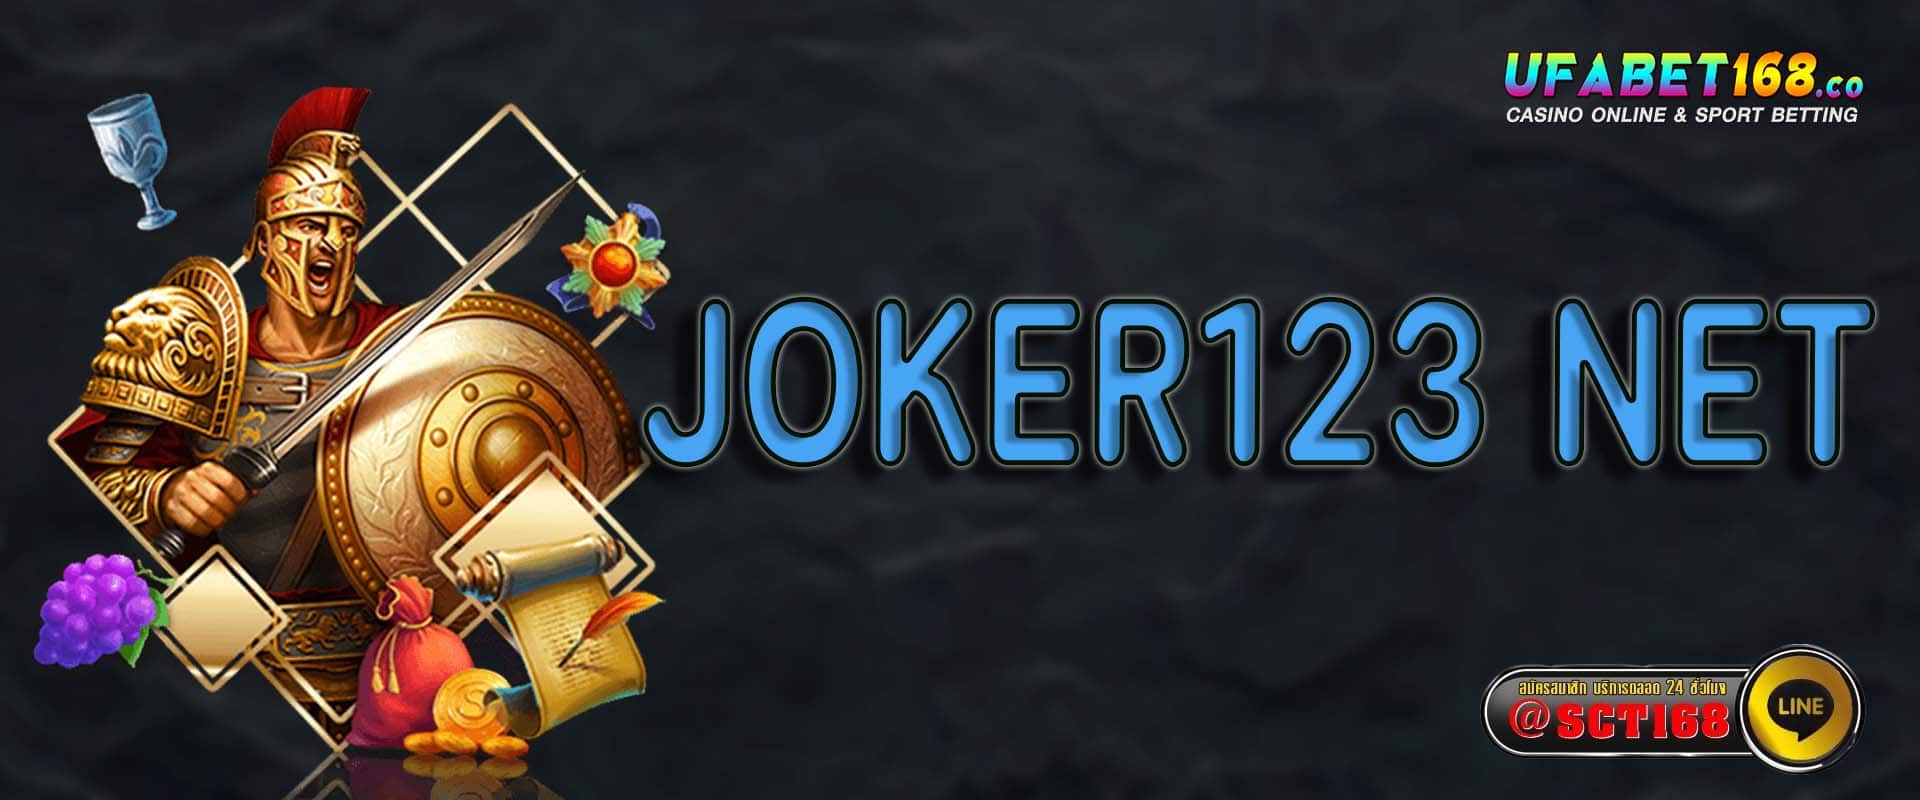 joker123 net ฟรีเครดิต